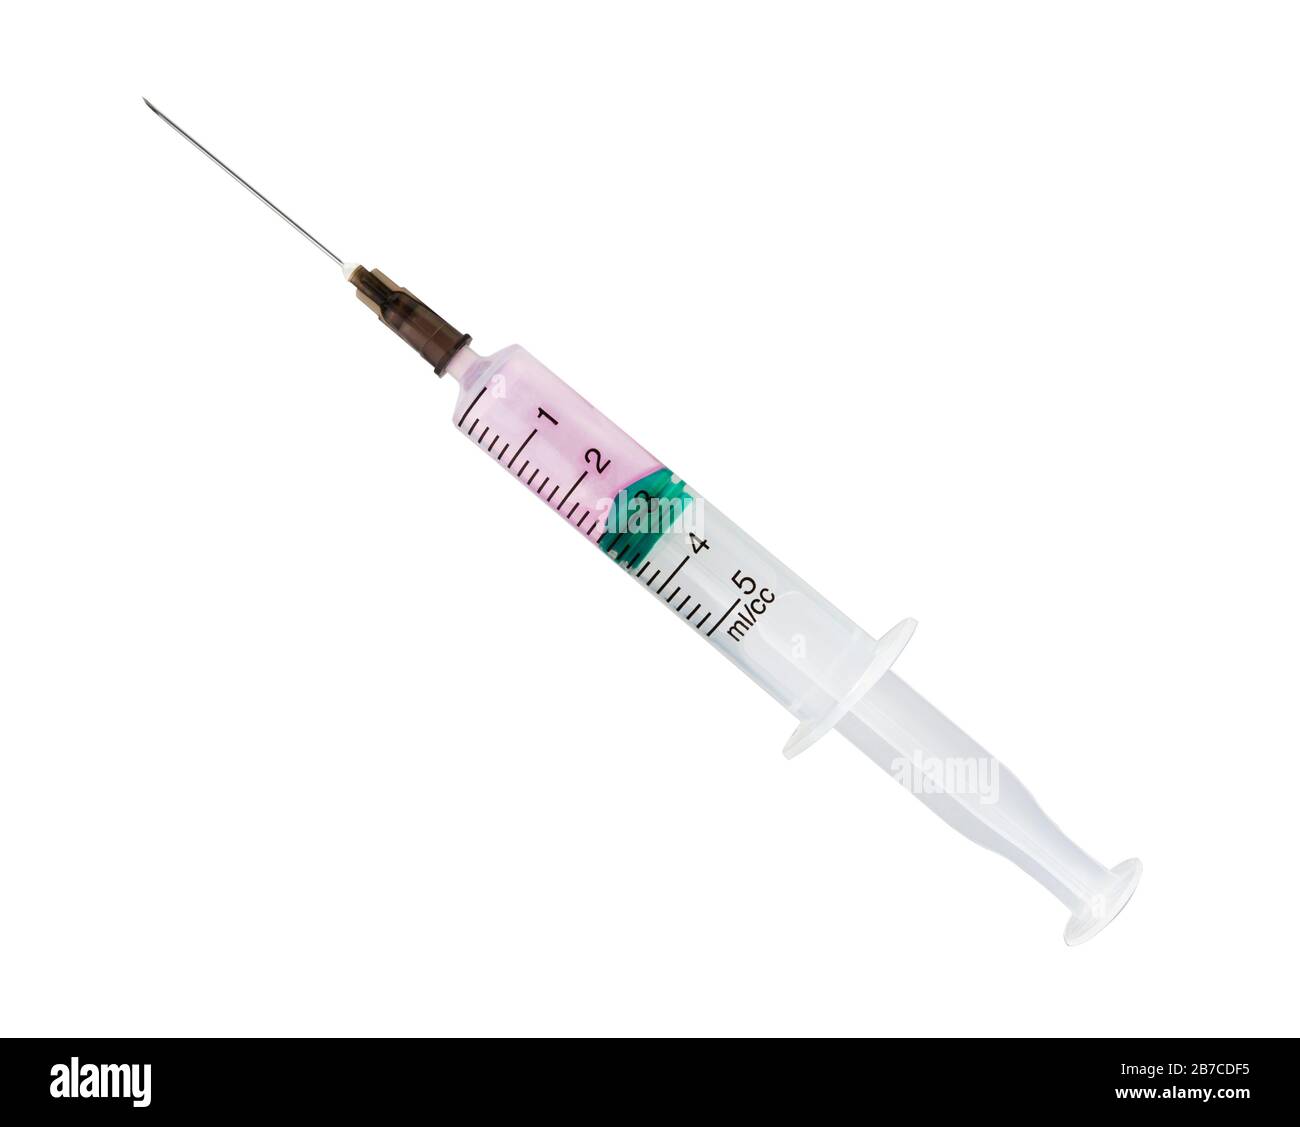 Spritze Nahaufnahme isoliert auf weißem Hintergrund. Medizinische Spritze,  Injektionskanüle, Befüllen einer Spritze mit einem Medikament  Stockfotografie - Alamy